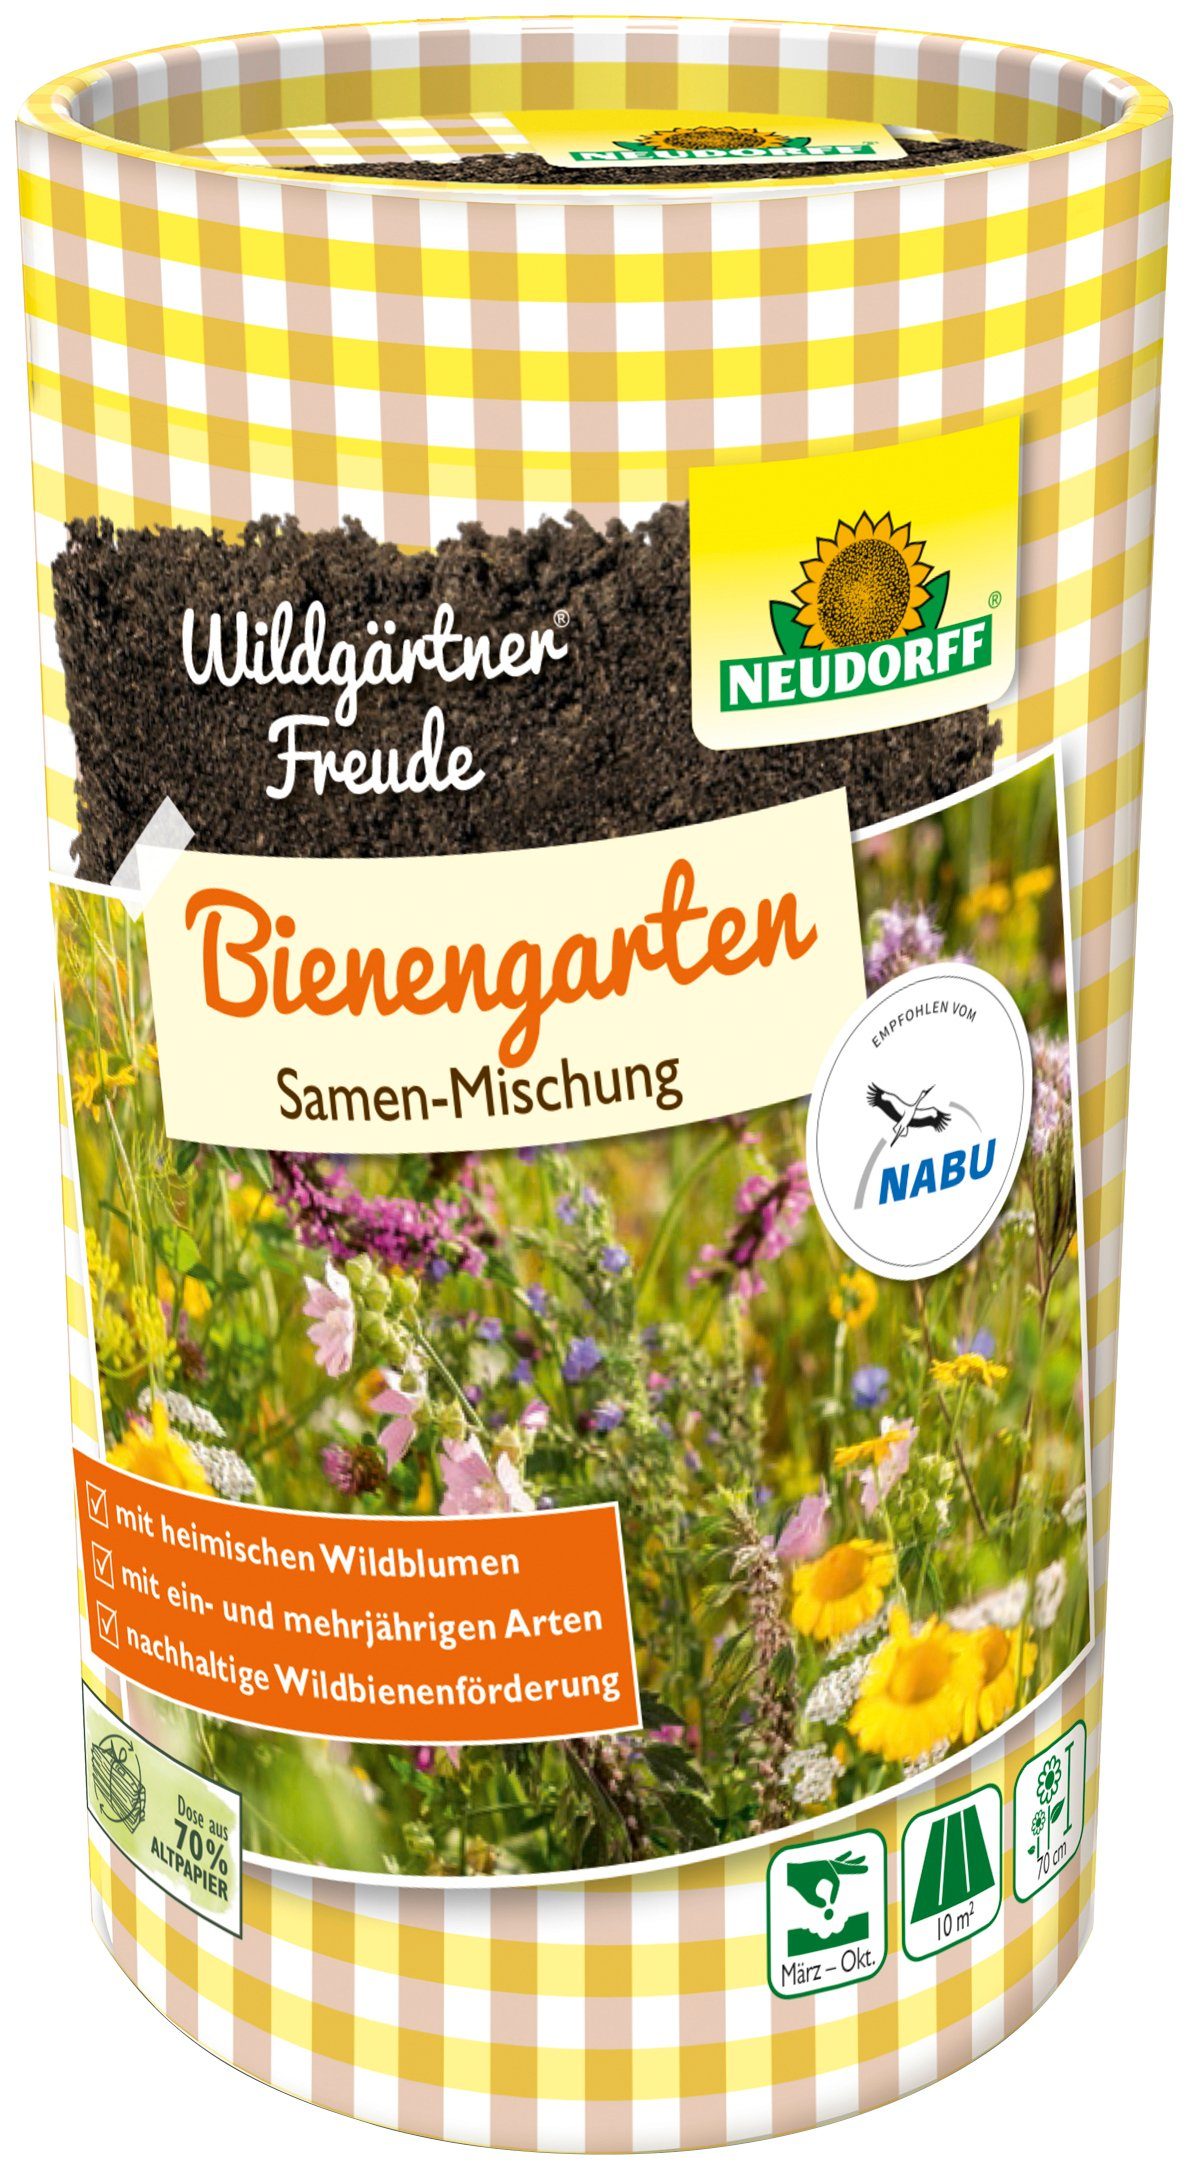 Neudorff Blumensamen »WildgärtnerFreude Bienengarten«, 50 g, für ca. 10 m²  Fläche online kaufen | OTTO